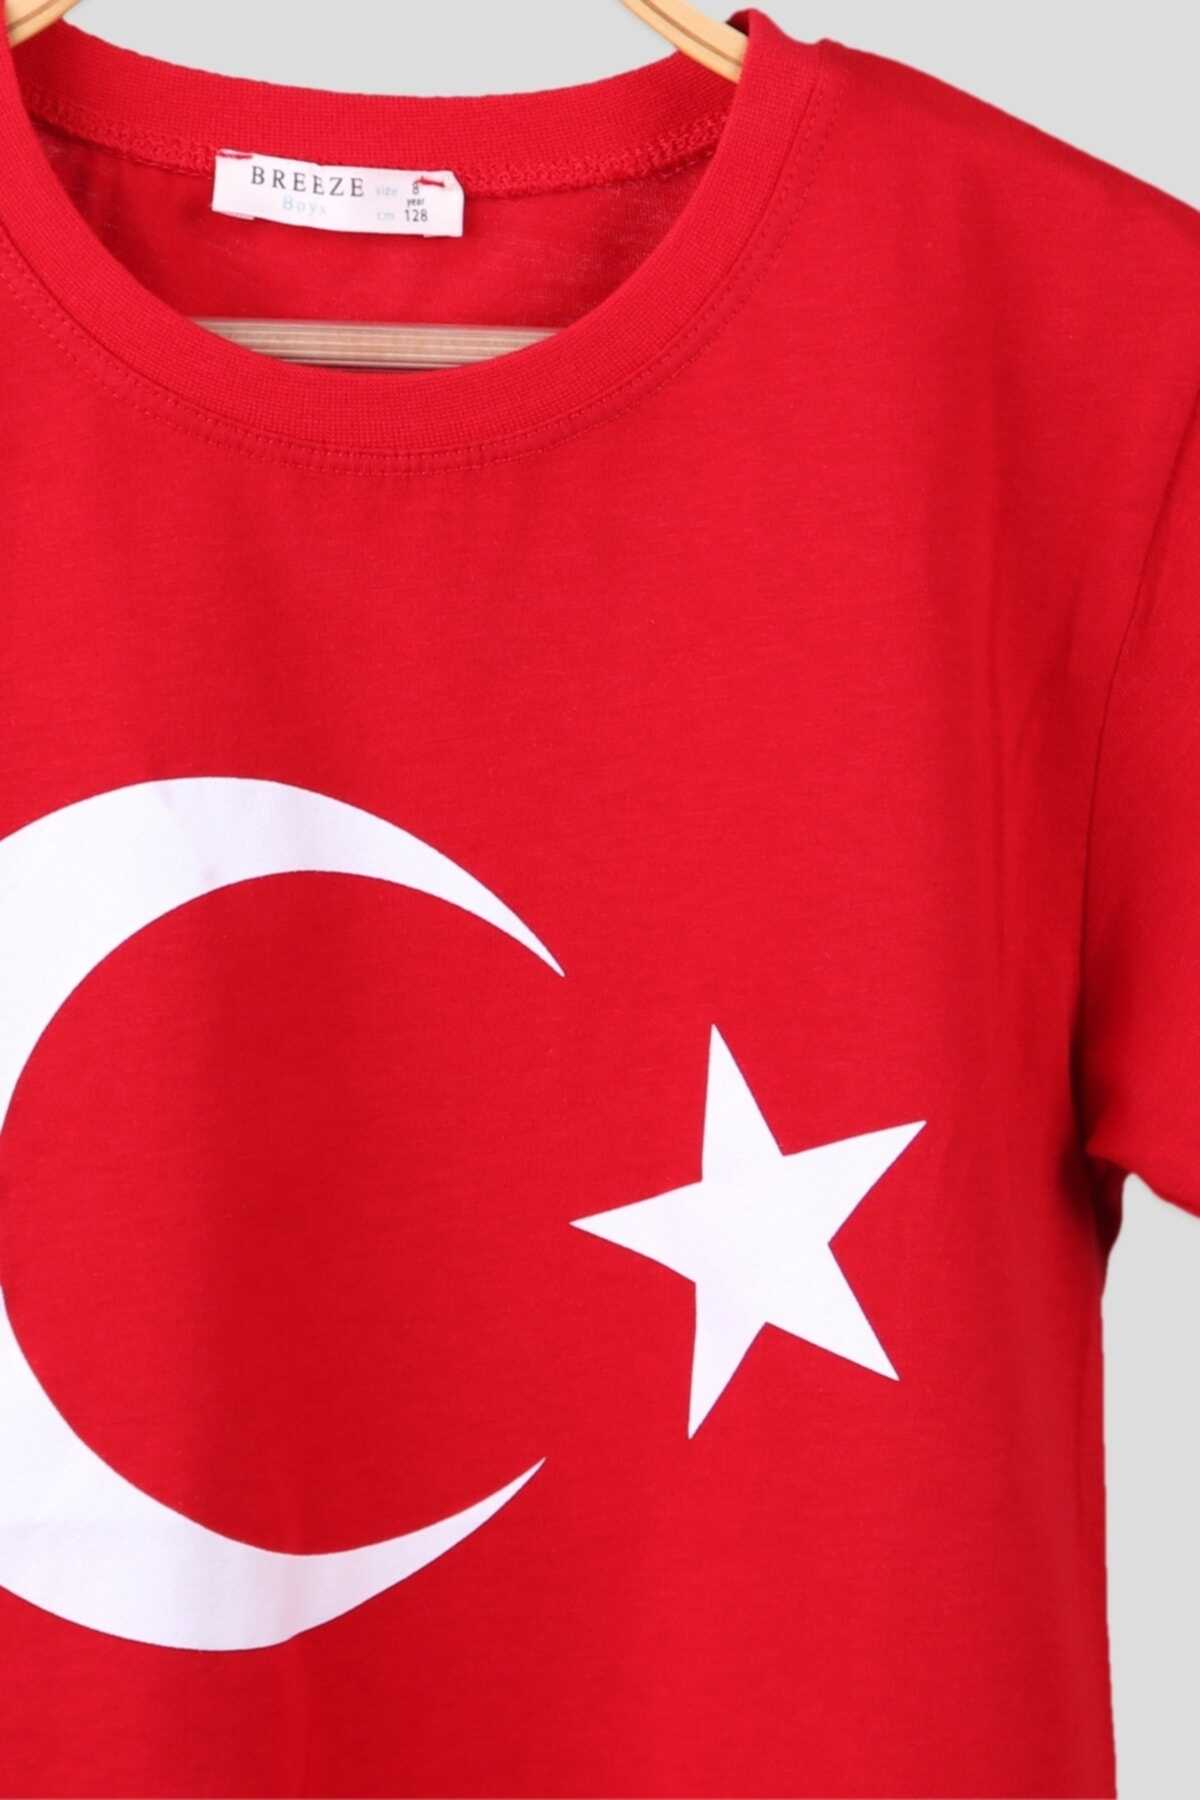 تیشرت بچه گانه یقه گرد طرح پرچم ترکیه  قرمز برند Breeze 